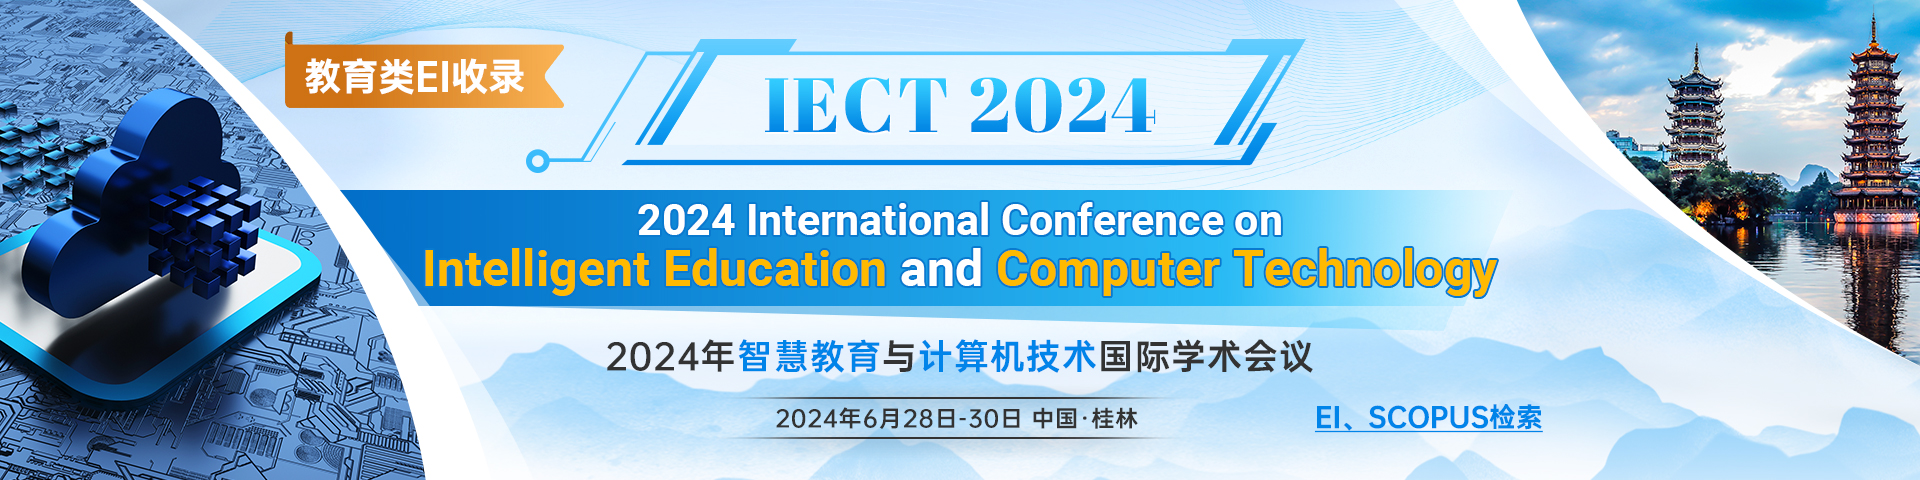 6月桂林-IECT-2024-艾思平台.jpg